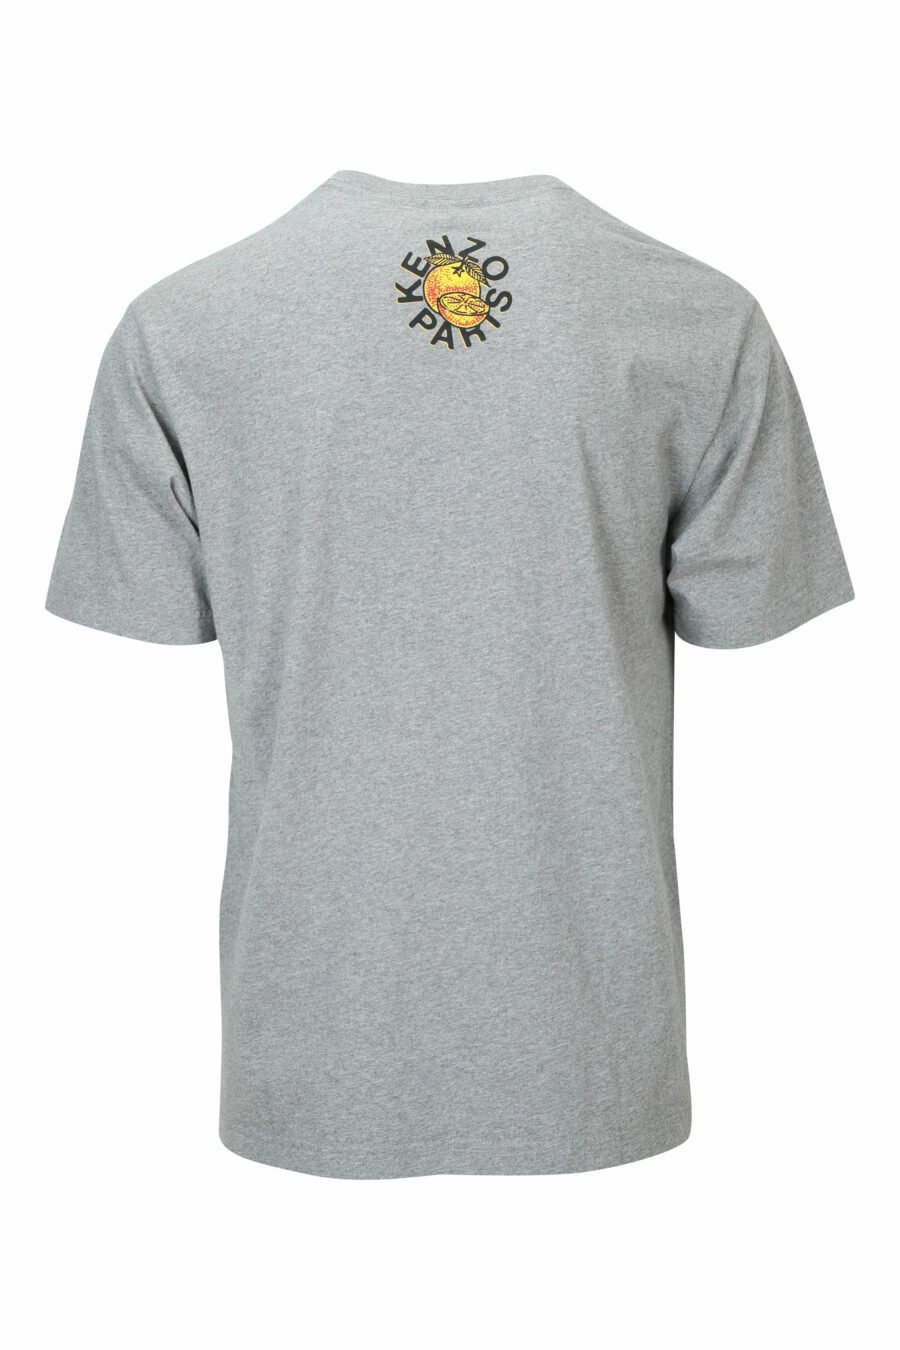 Camiseta gris con maxilogo "kenzo orange" - 3612230629523 1